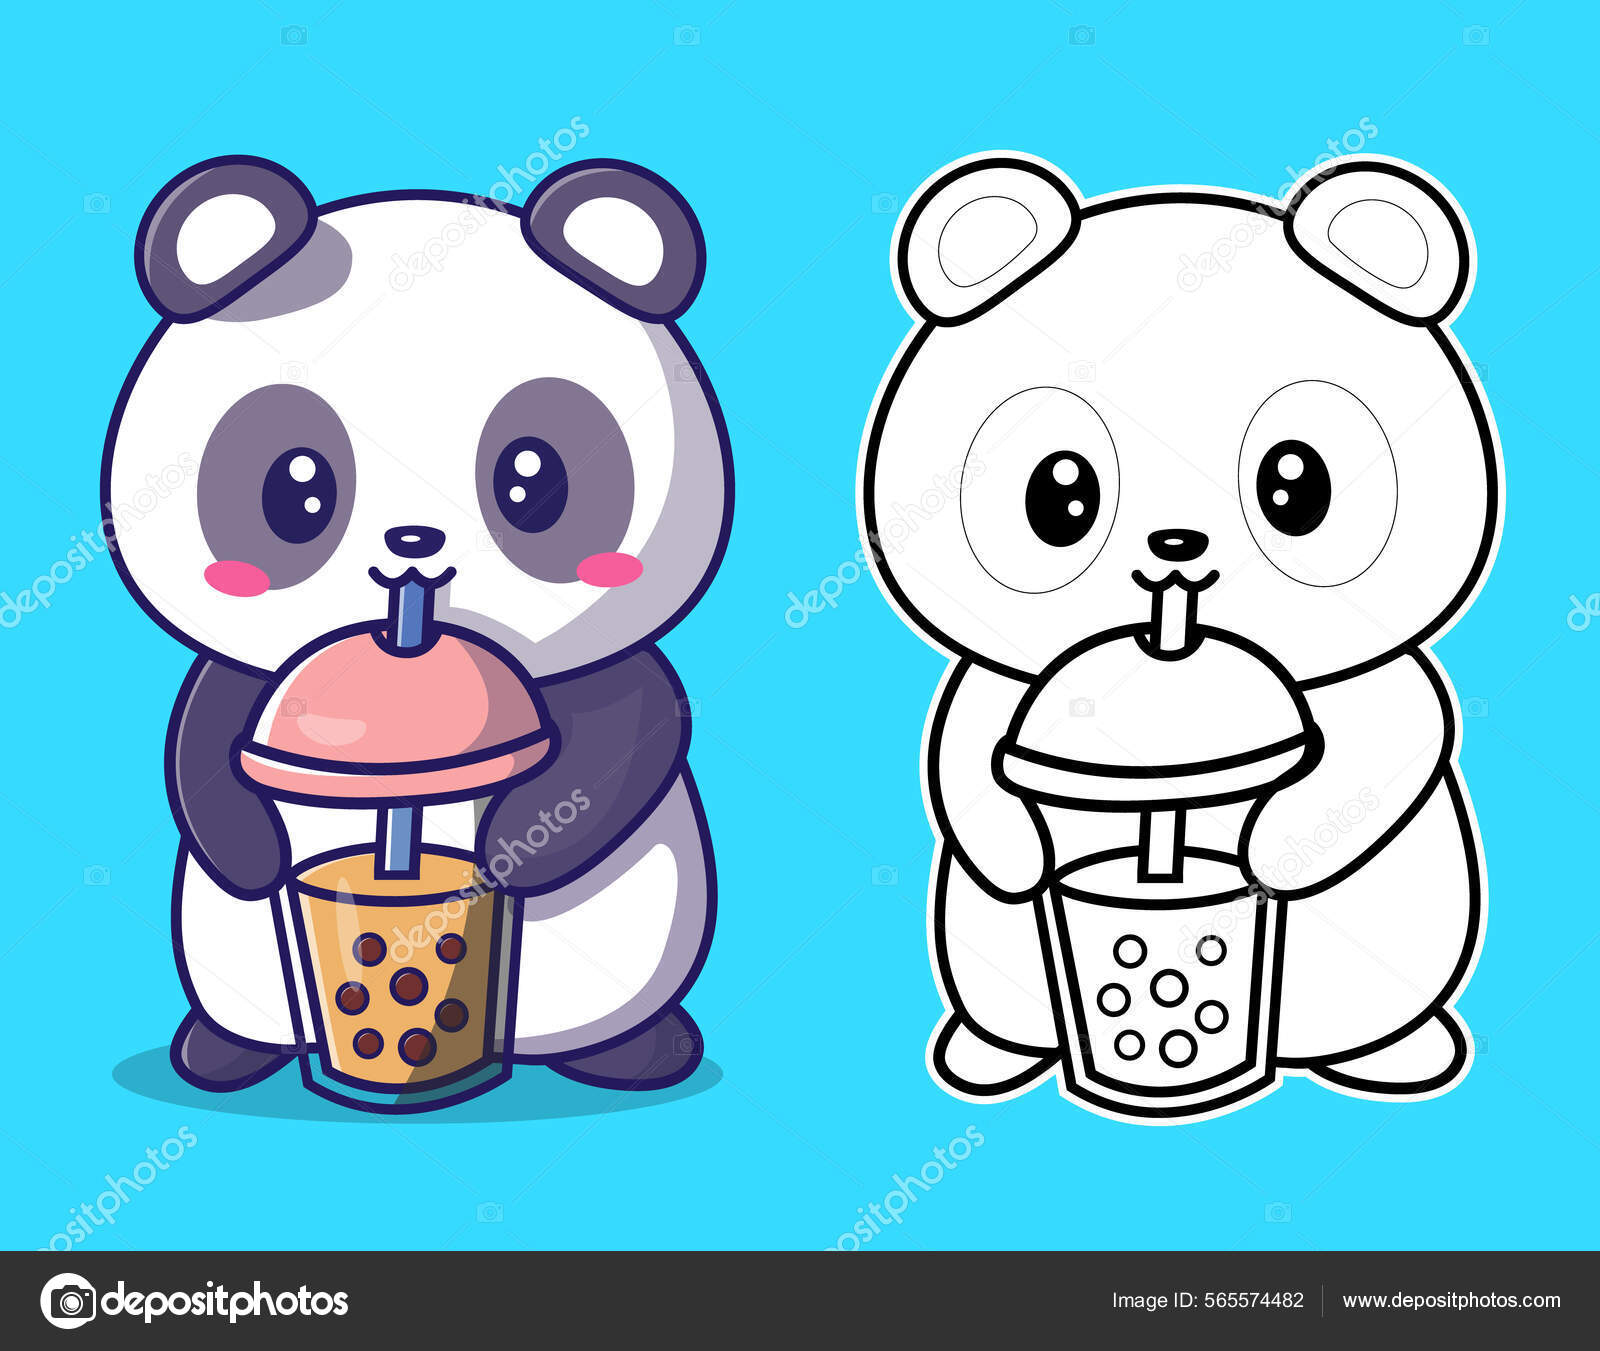 Panda com drink para colorir - Imprimir Desenhos